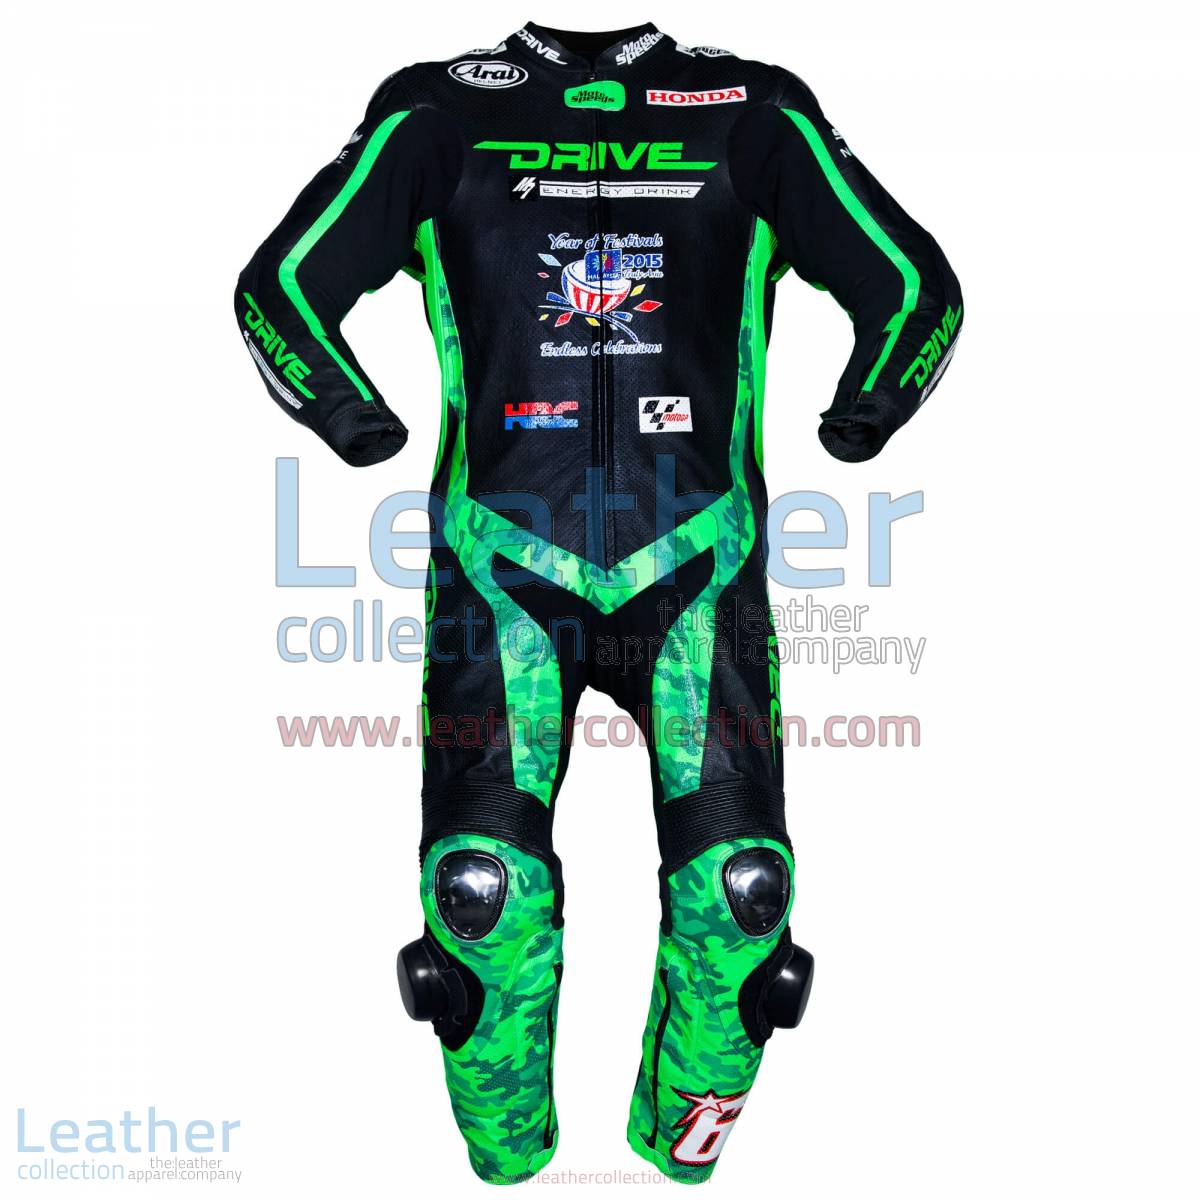 Nicky Hayden Honda Racing MotoGP Mugello 2015 Suit | Kentucky Kid,Nicky Hayden Honda Racing MotoGP Mugello 2015 Suit